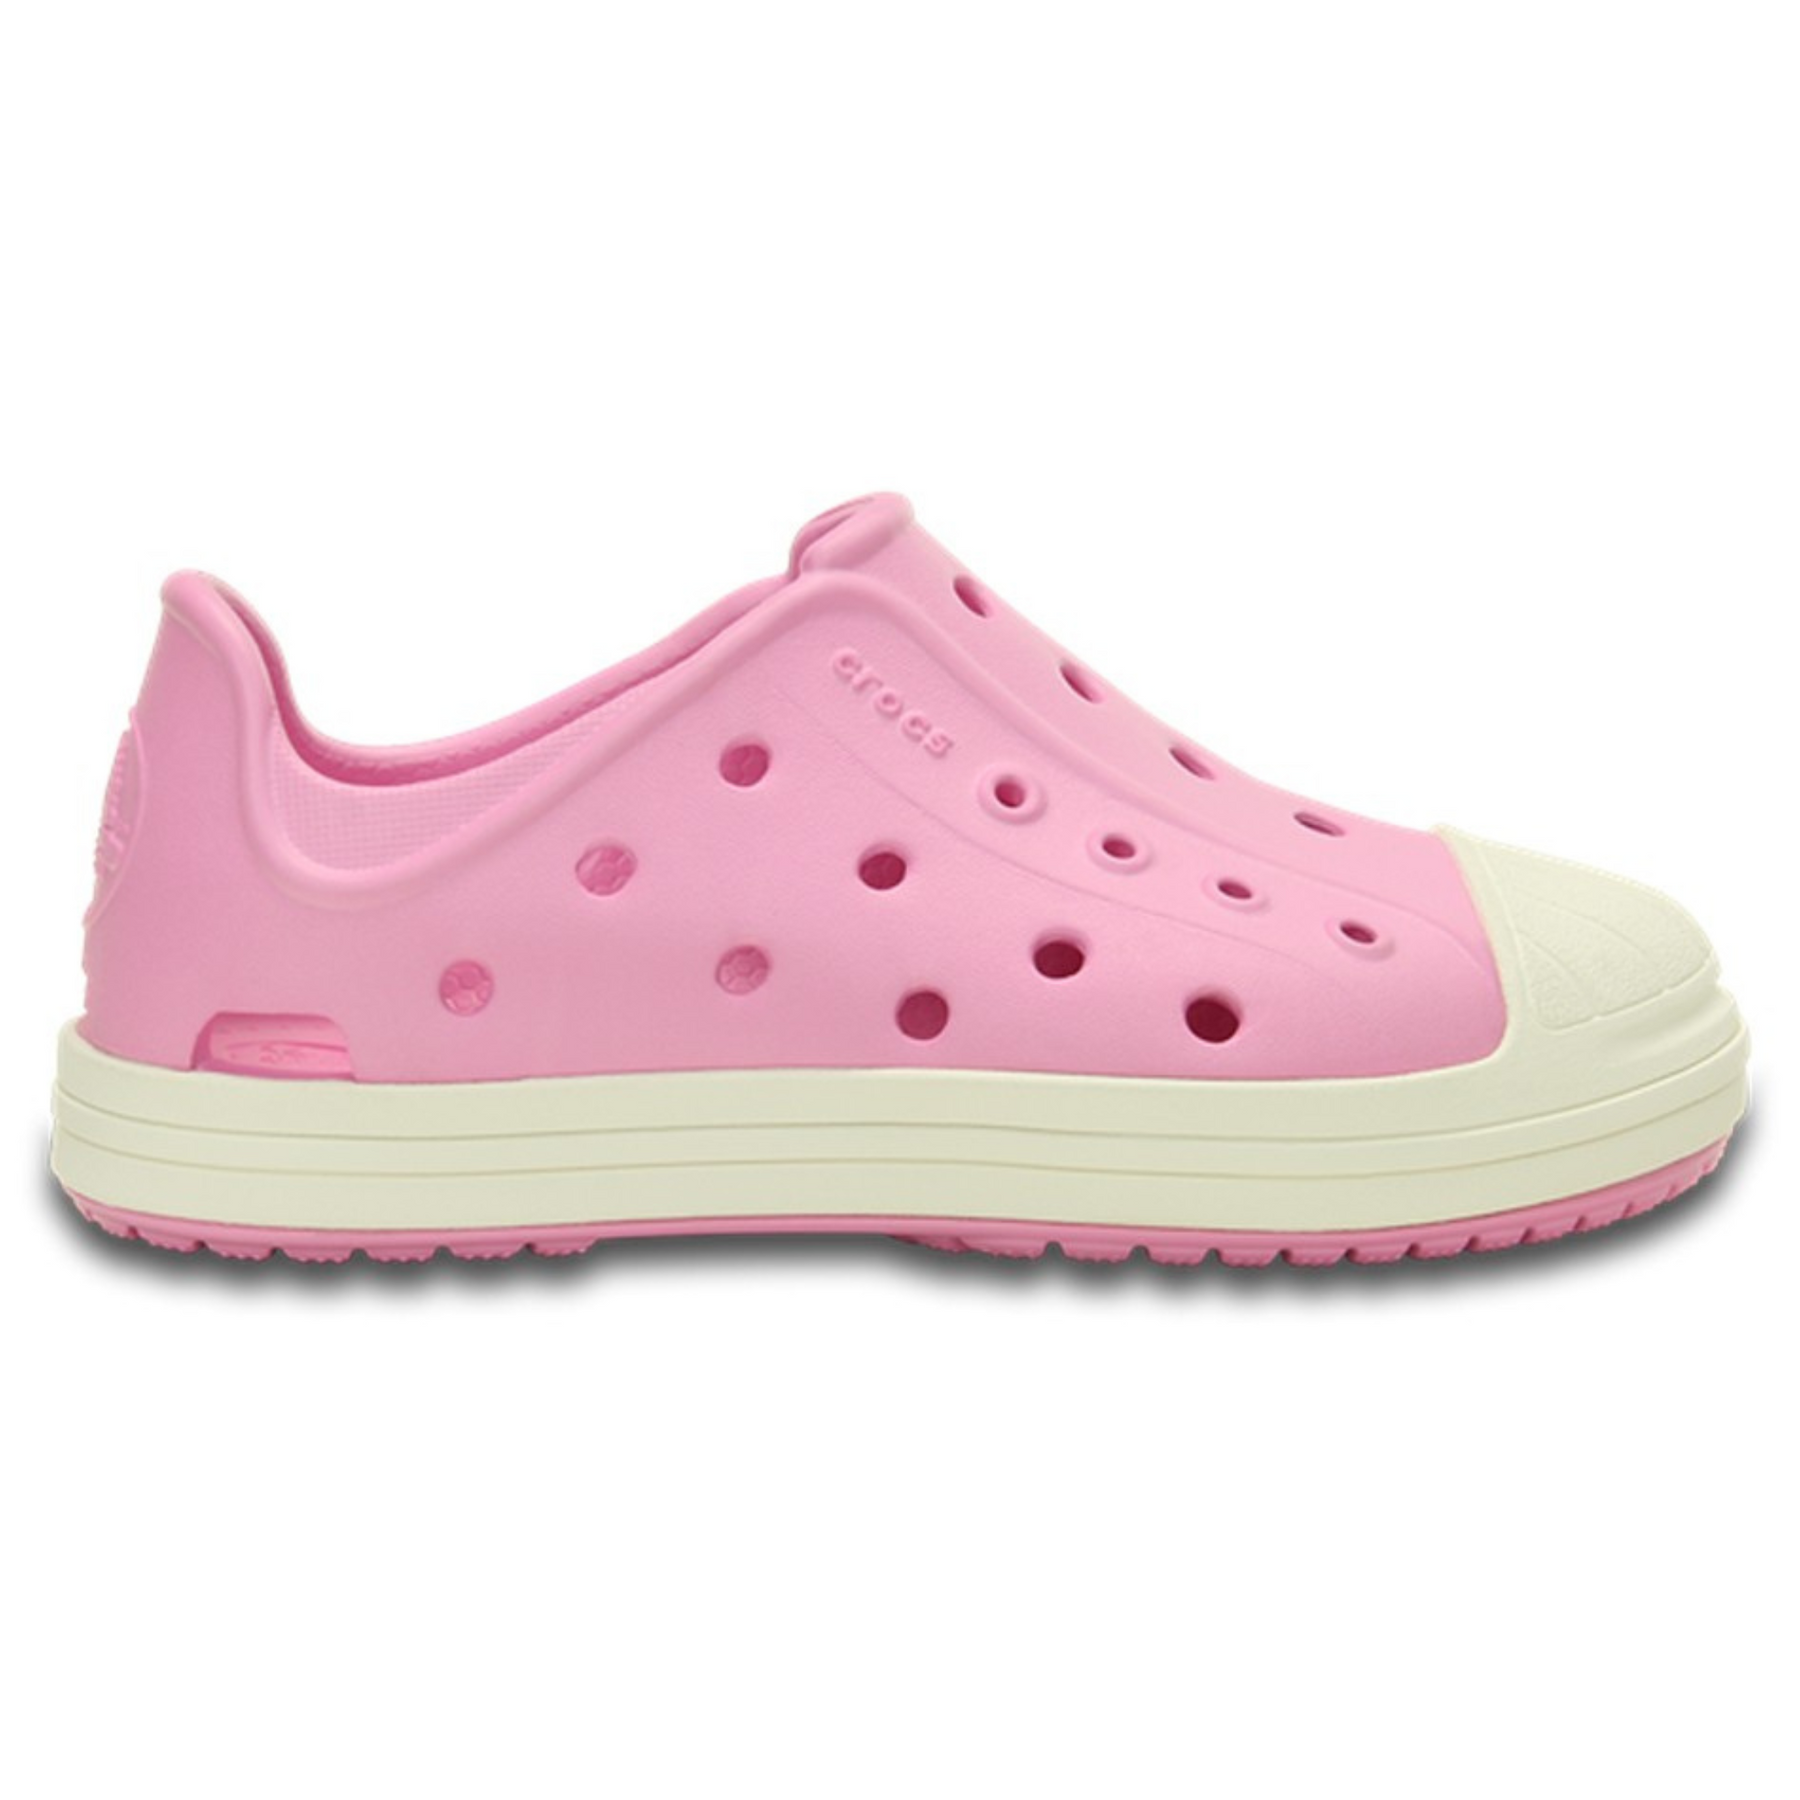 Crocs Kids Bump It Shoe Детские Кеды Крокс Бамп Ит Шуу 27 202281 фото спеши выбрать самые модные товары Crocs